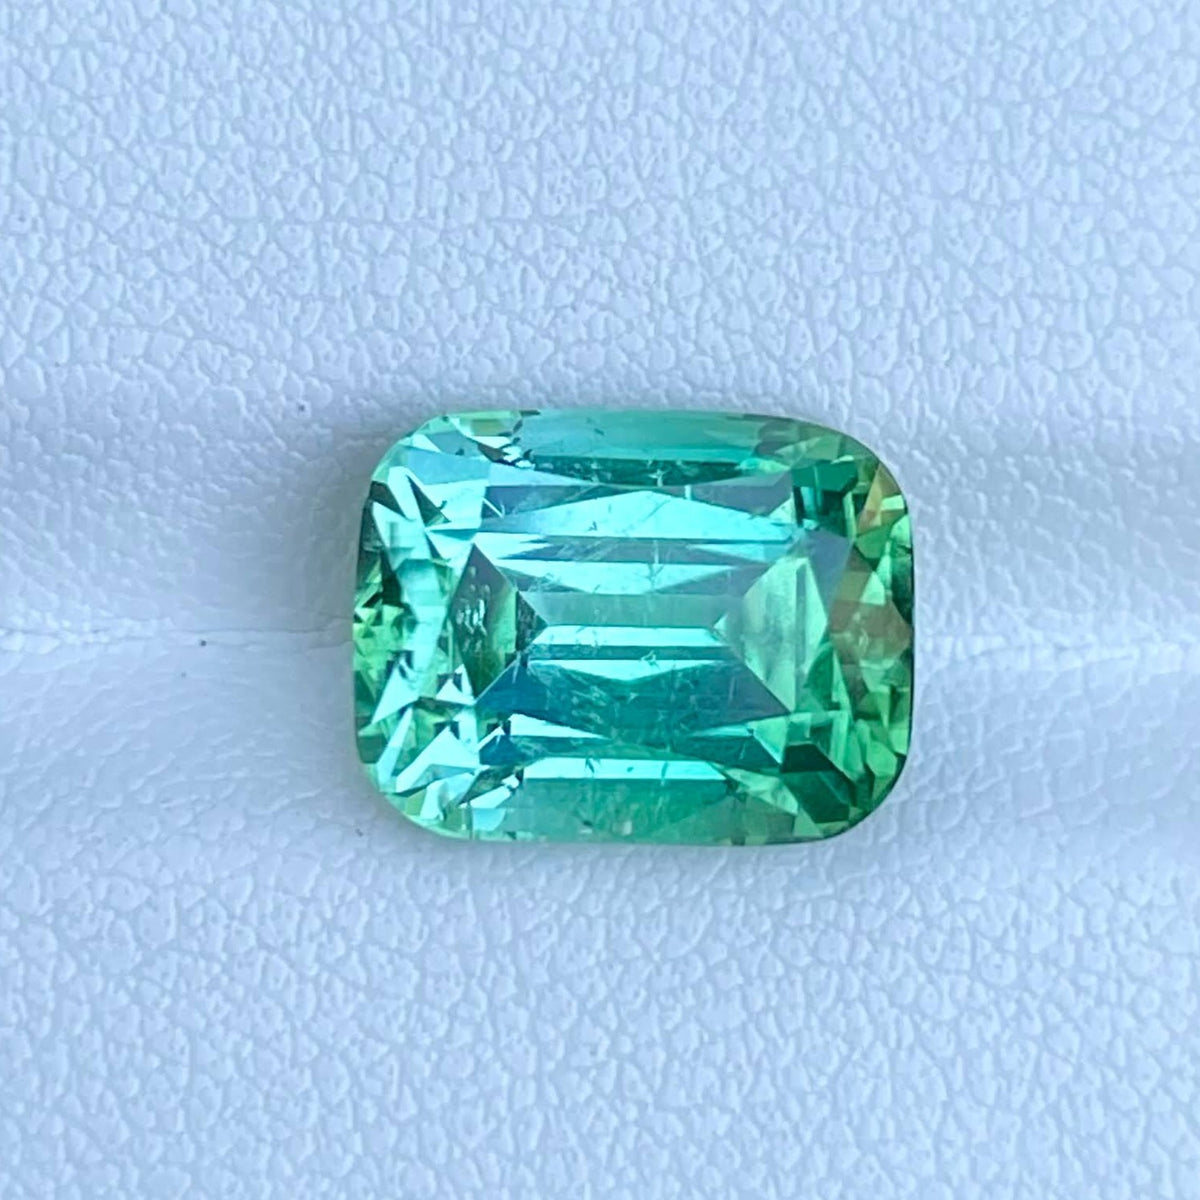 6.78 Carats Mint Green Tourmaline Stone